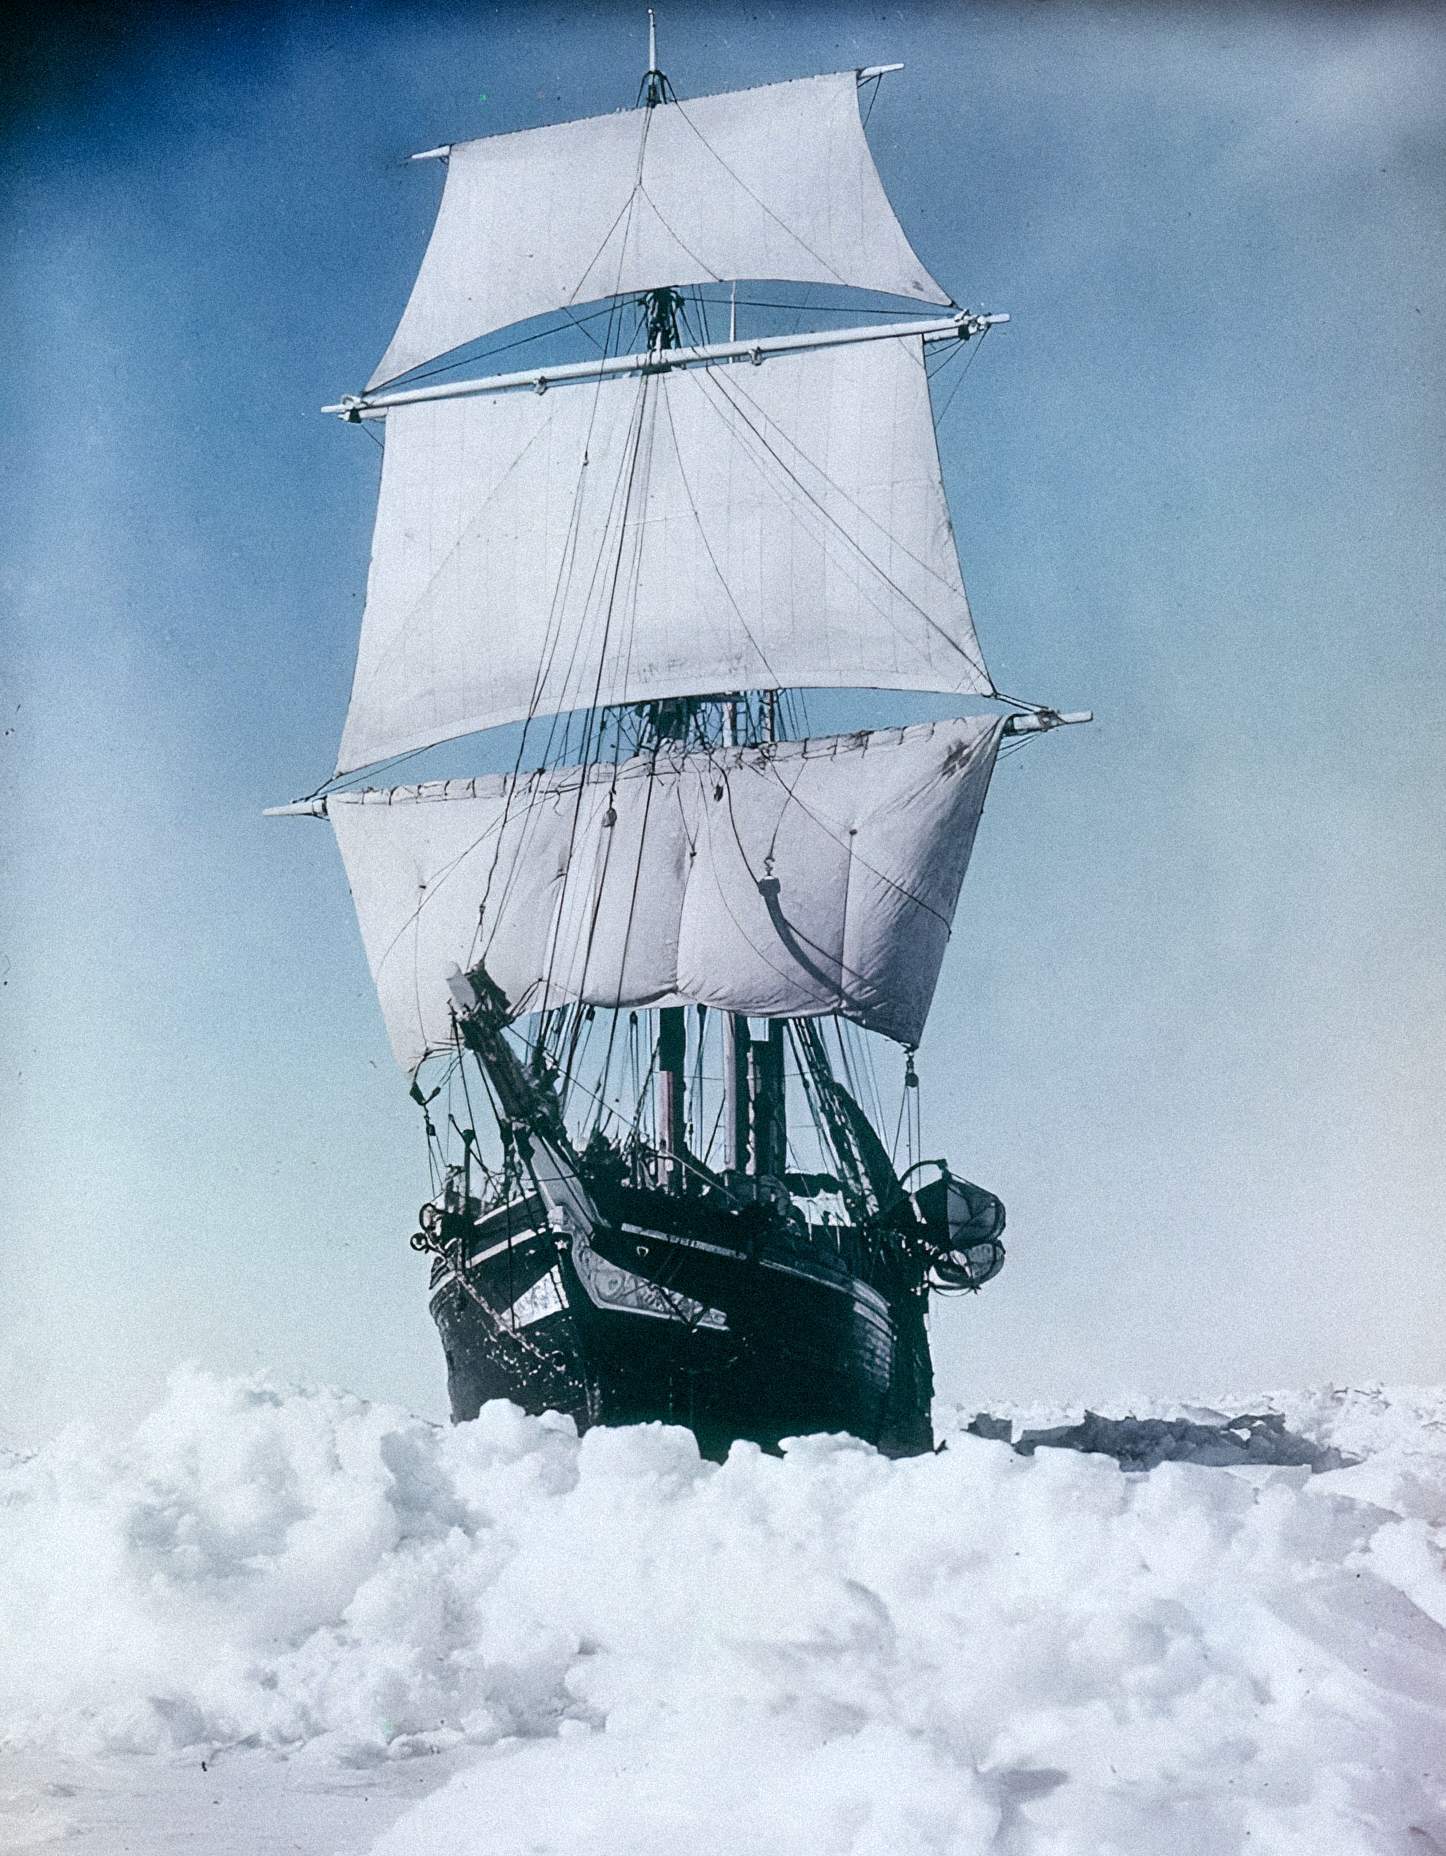 Ifarada labẹ nya ati ọkọ oju omi ti n gbiyanju lati ya nipasẹ yinyin idii ni Okun Weddell lori Irin-ajo Imperial Trans-Antarctic, 1915, nipasẹ Frank Hurley.